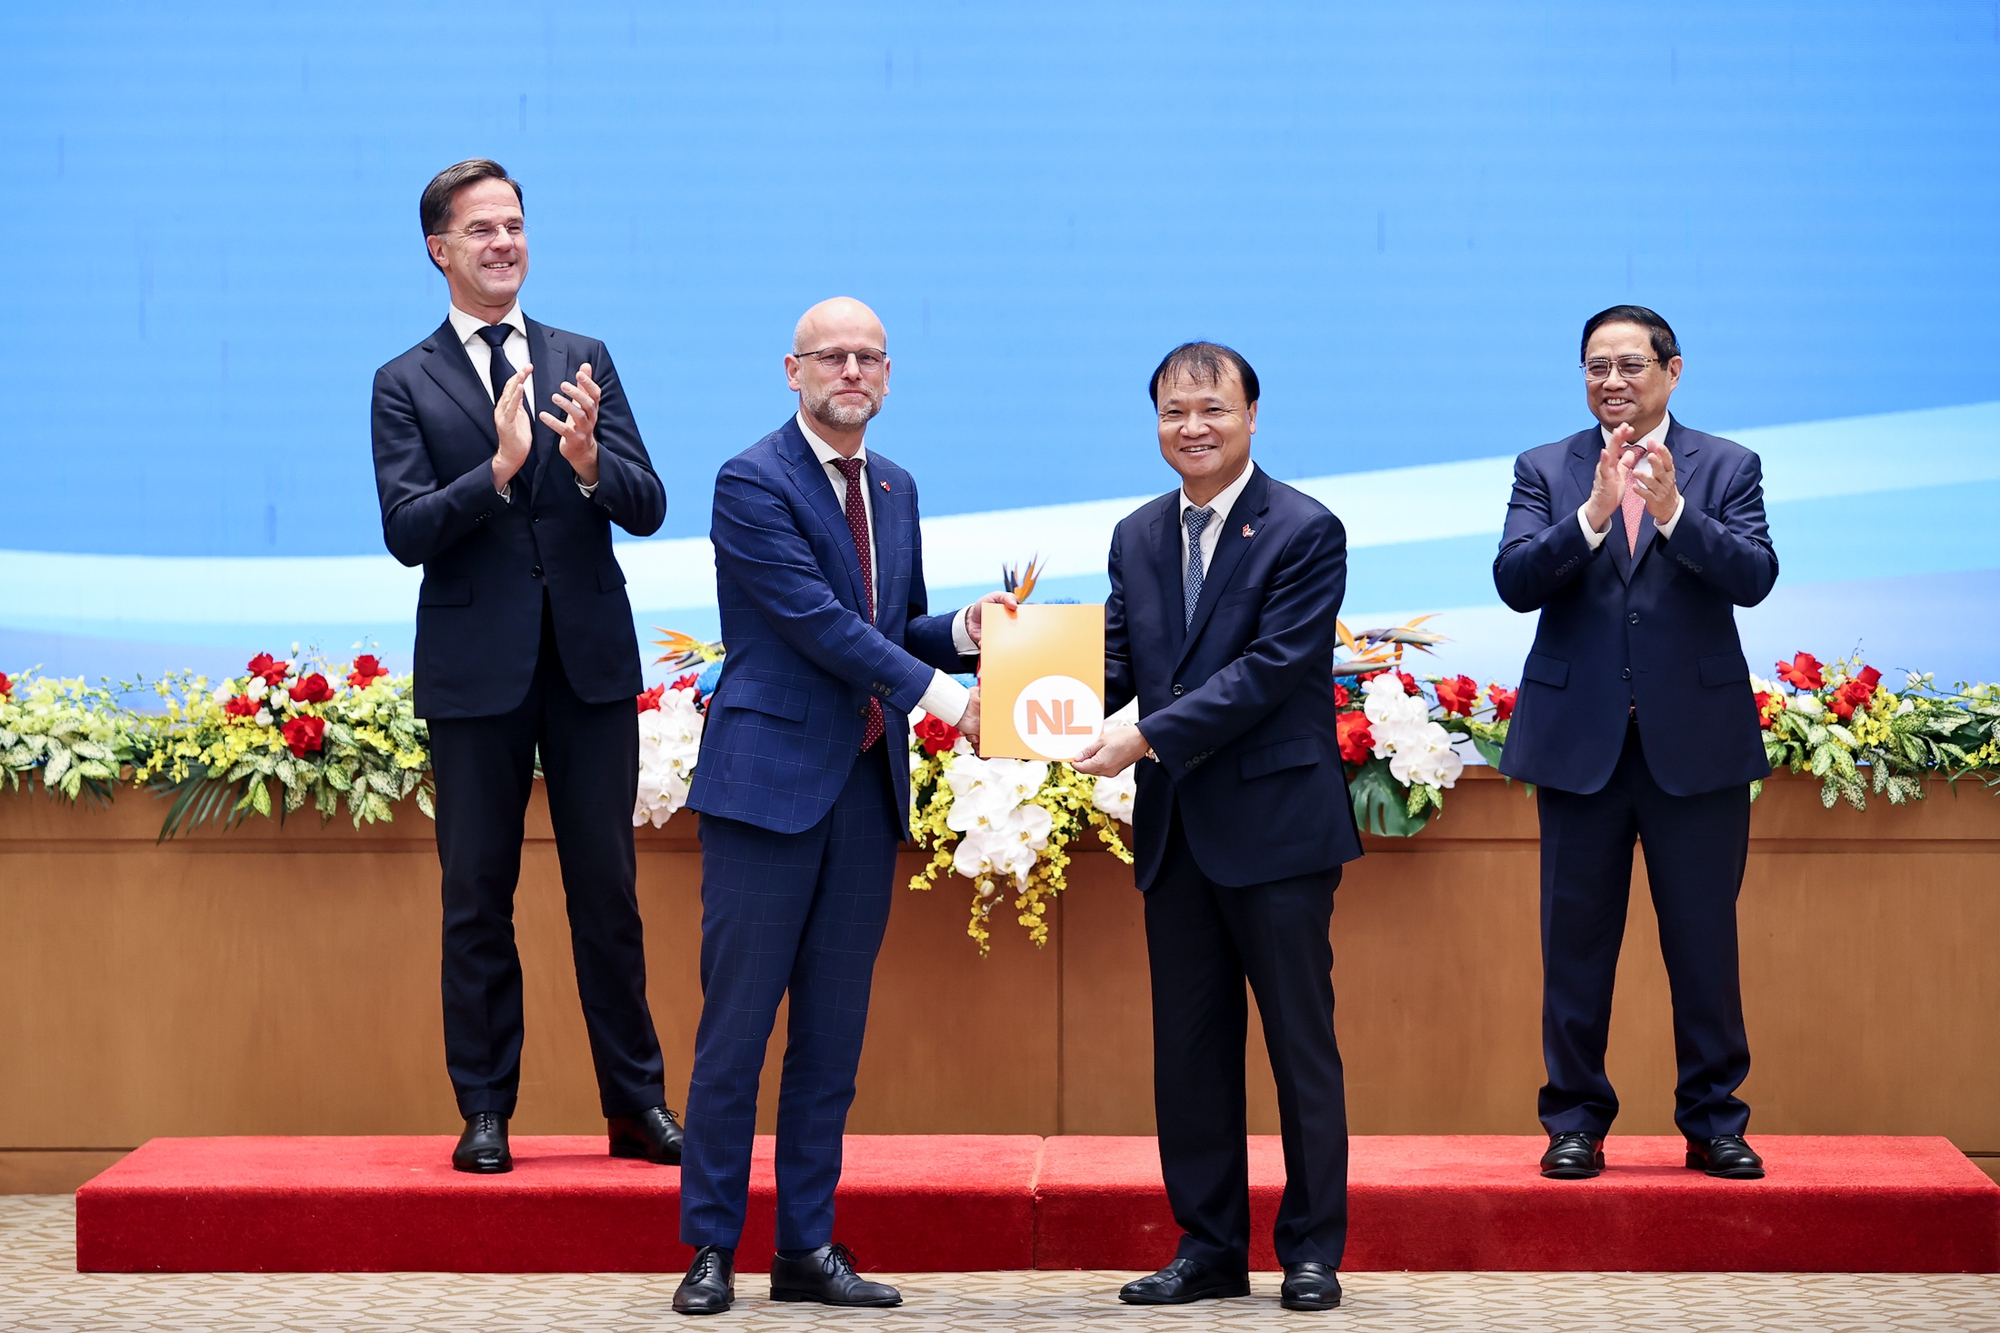 Thứ trưởng Ngoại Thương, Bộ Ngoại giao Hà Lan Michiel Sweers trao cho Thứ trưởng Bộ Công Thương Đỗ Thắng Hải Quyết định viện trợ không hoàn lại của Hà Lan cho chương trình Thúc đẩy xuất khẩu sang thị trường EU thông qua nền tảng thương mại điện tử dành cho doanh nghiệp do phụ nữ làm chủ tại Việt Nam - Ảnh: VGP/Nhật Bắc